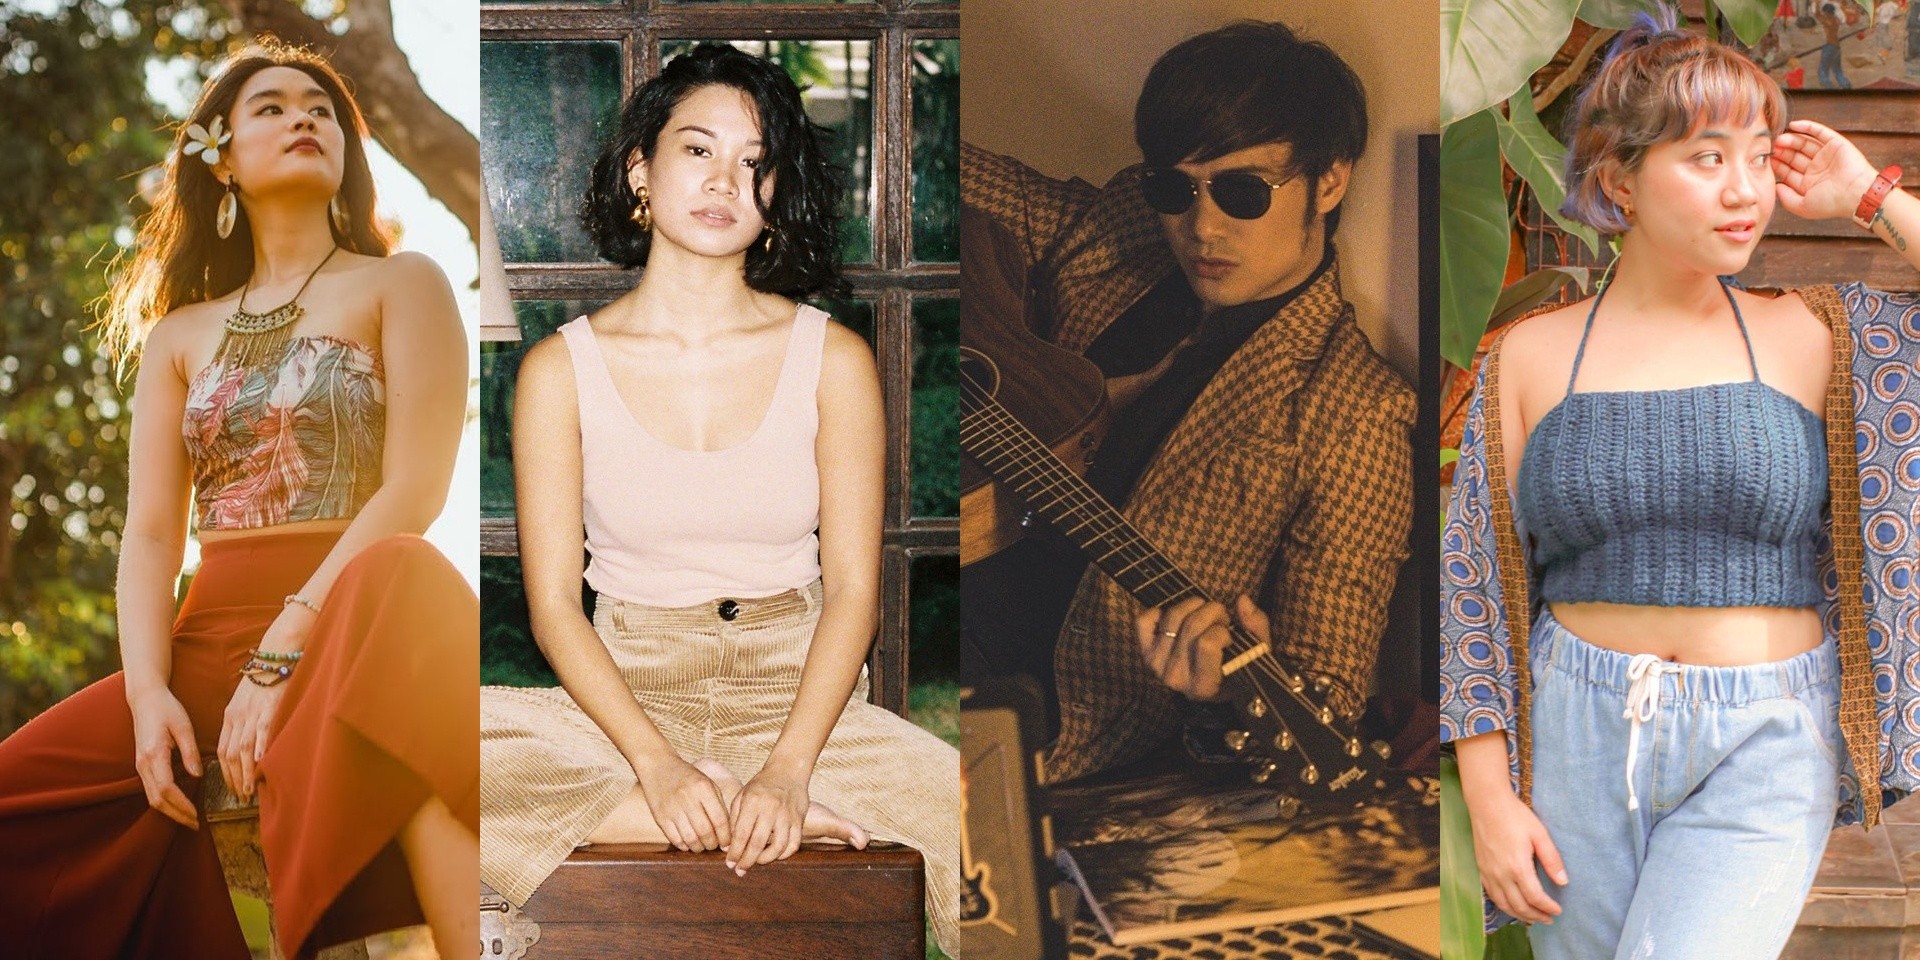 Rice Lucido, Bea Lorenzo, Kean Cipriano, Coeli, and more release new music – listen